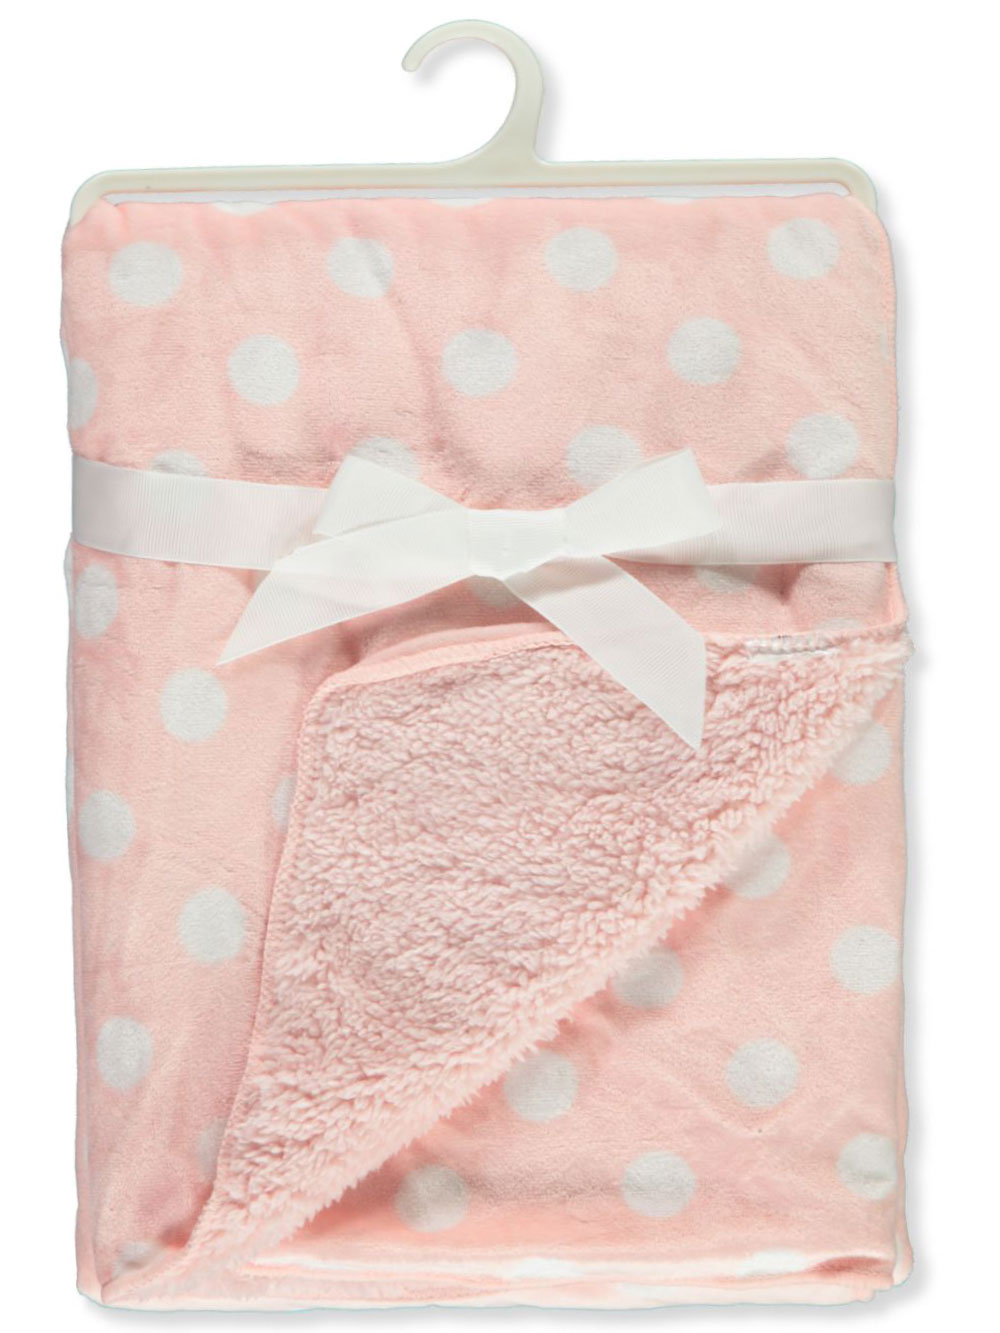 Stylish Baby Blankets